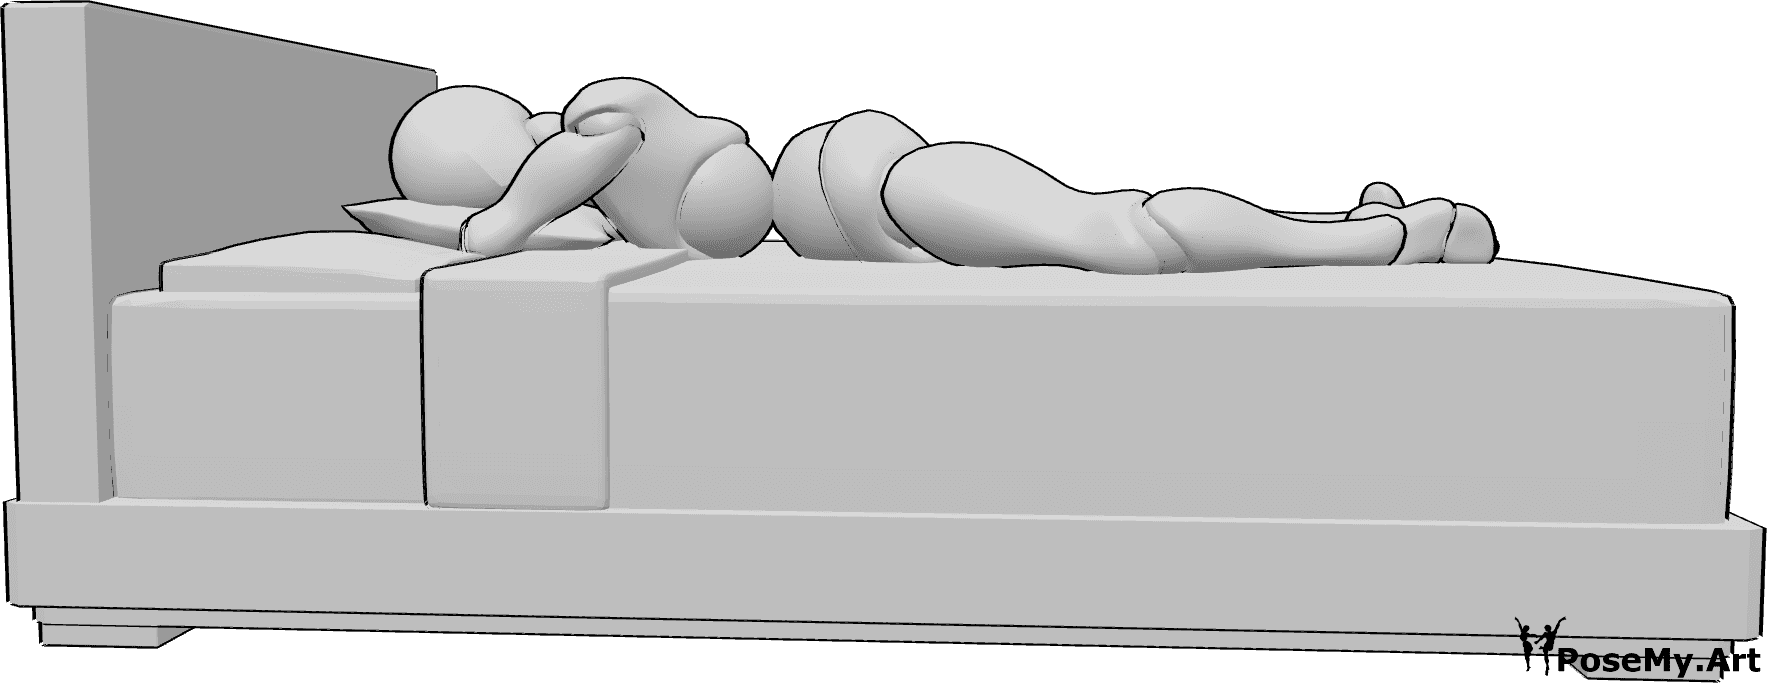 Referência de poses- Pose feminina deitada na cama - A mulher está deitada na cama, de barriga para baixo, com a cabeça apoiada numa almofada